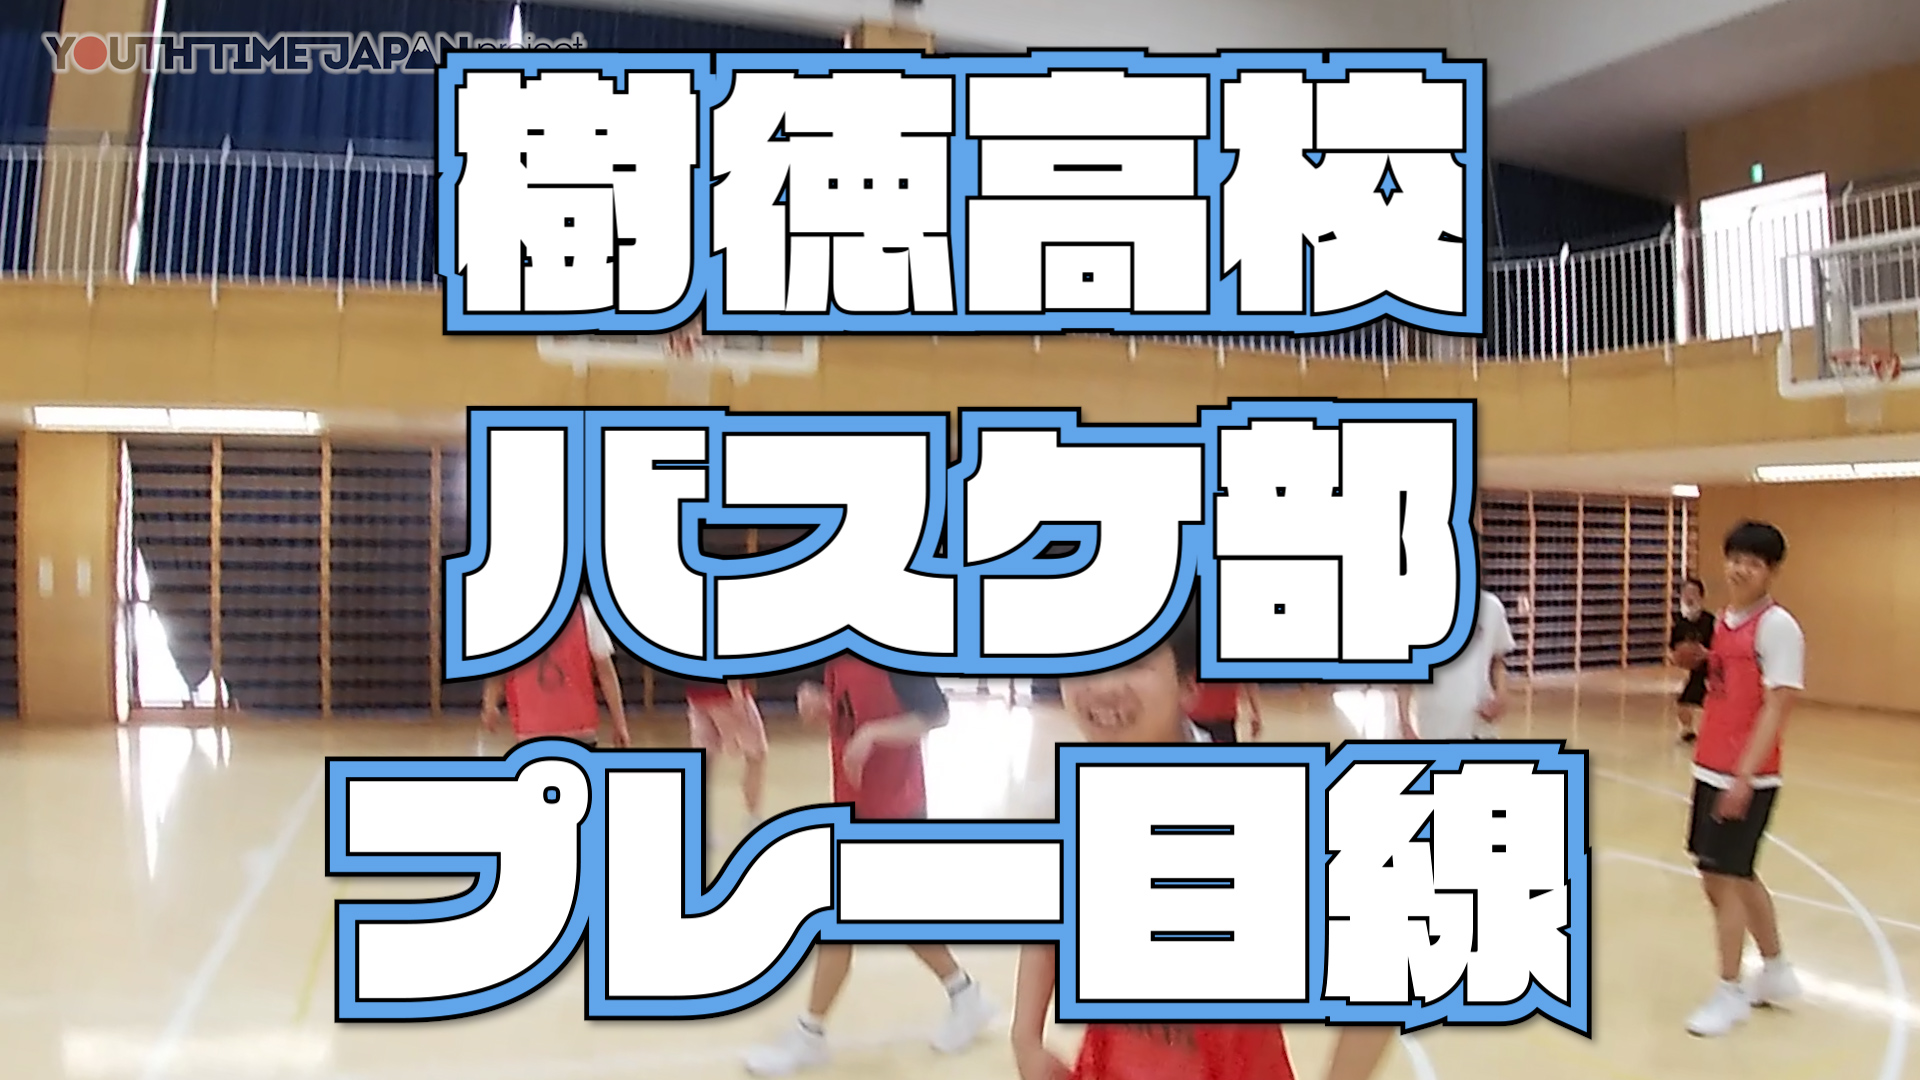 【目線動画】樹徳高校 男子バスケットボール部選手の目線